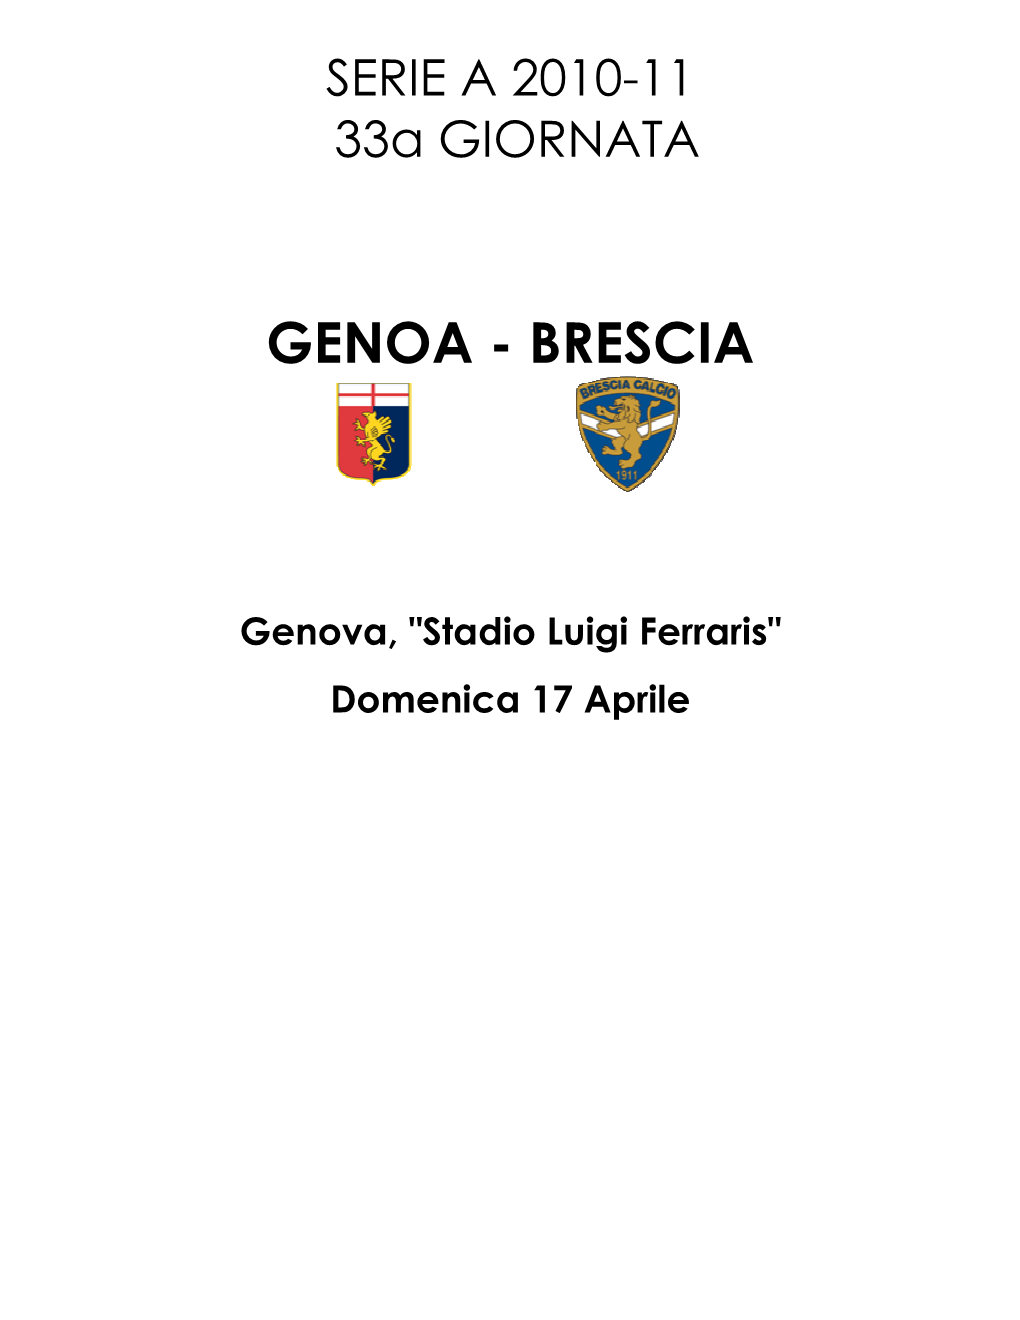 Genoa - Brescia